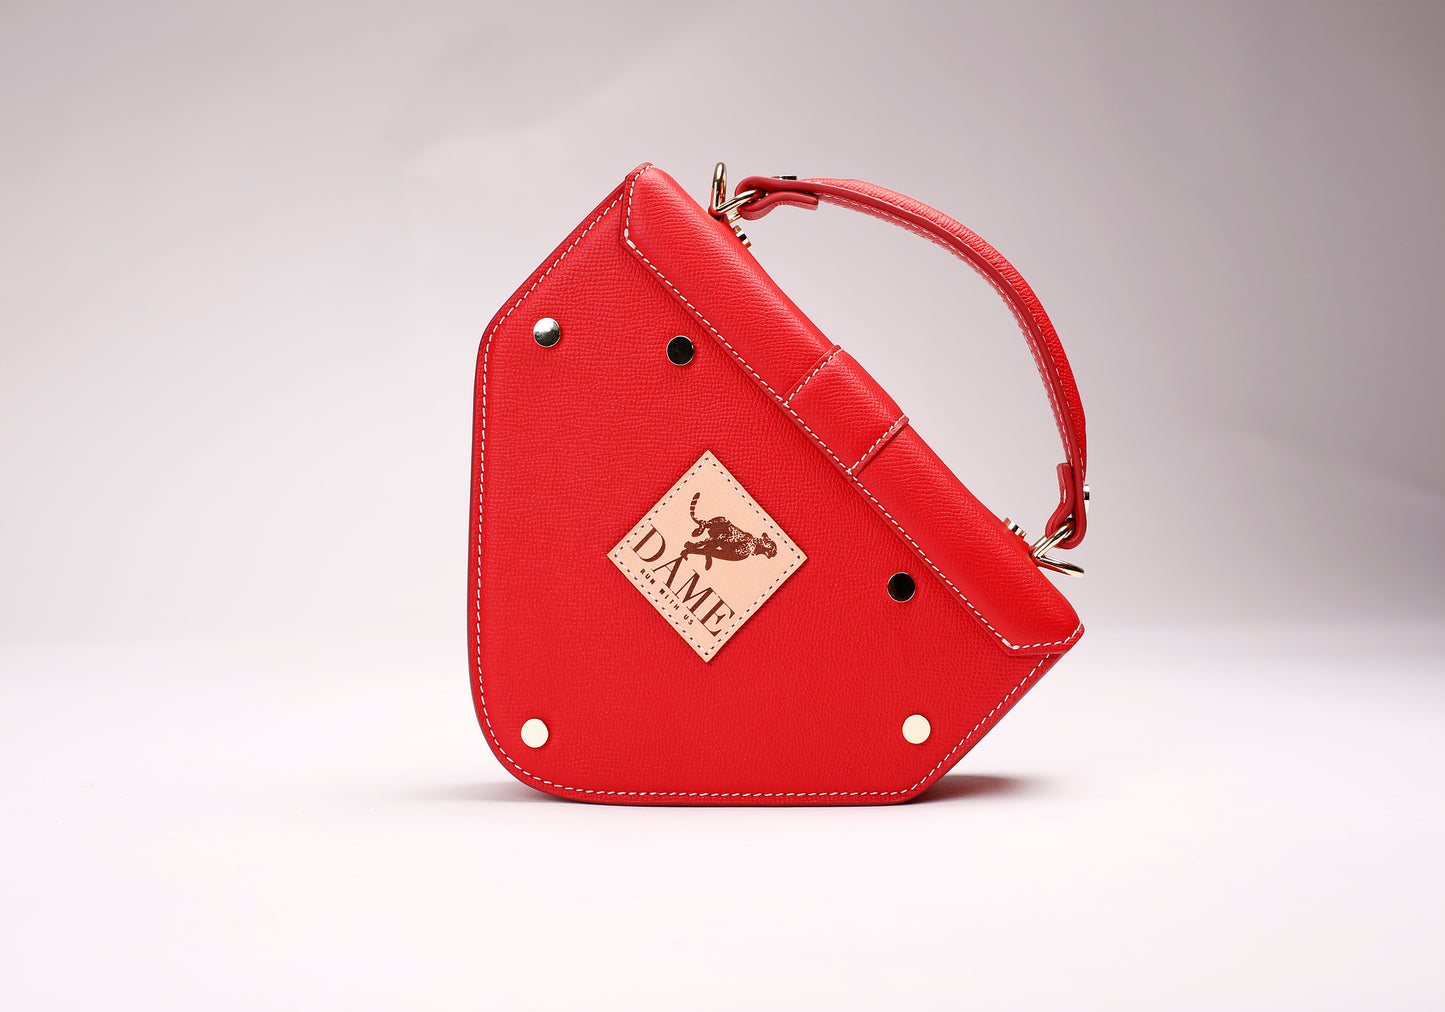 Look 6: The Regatta Handbag